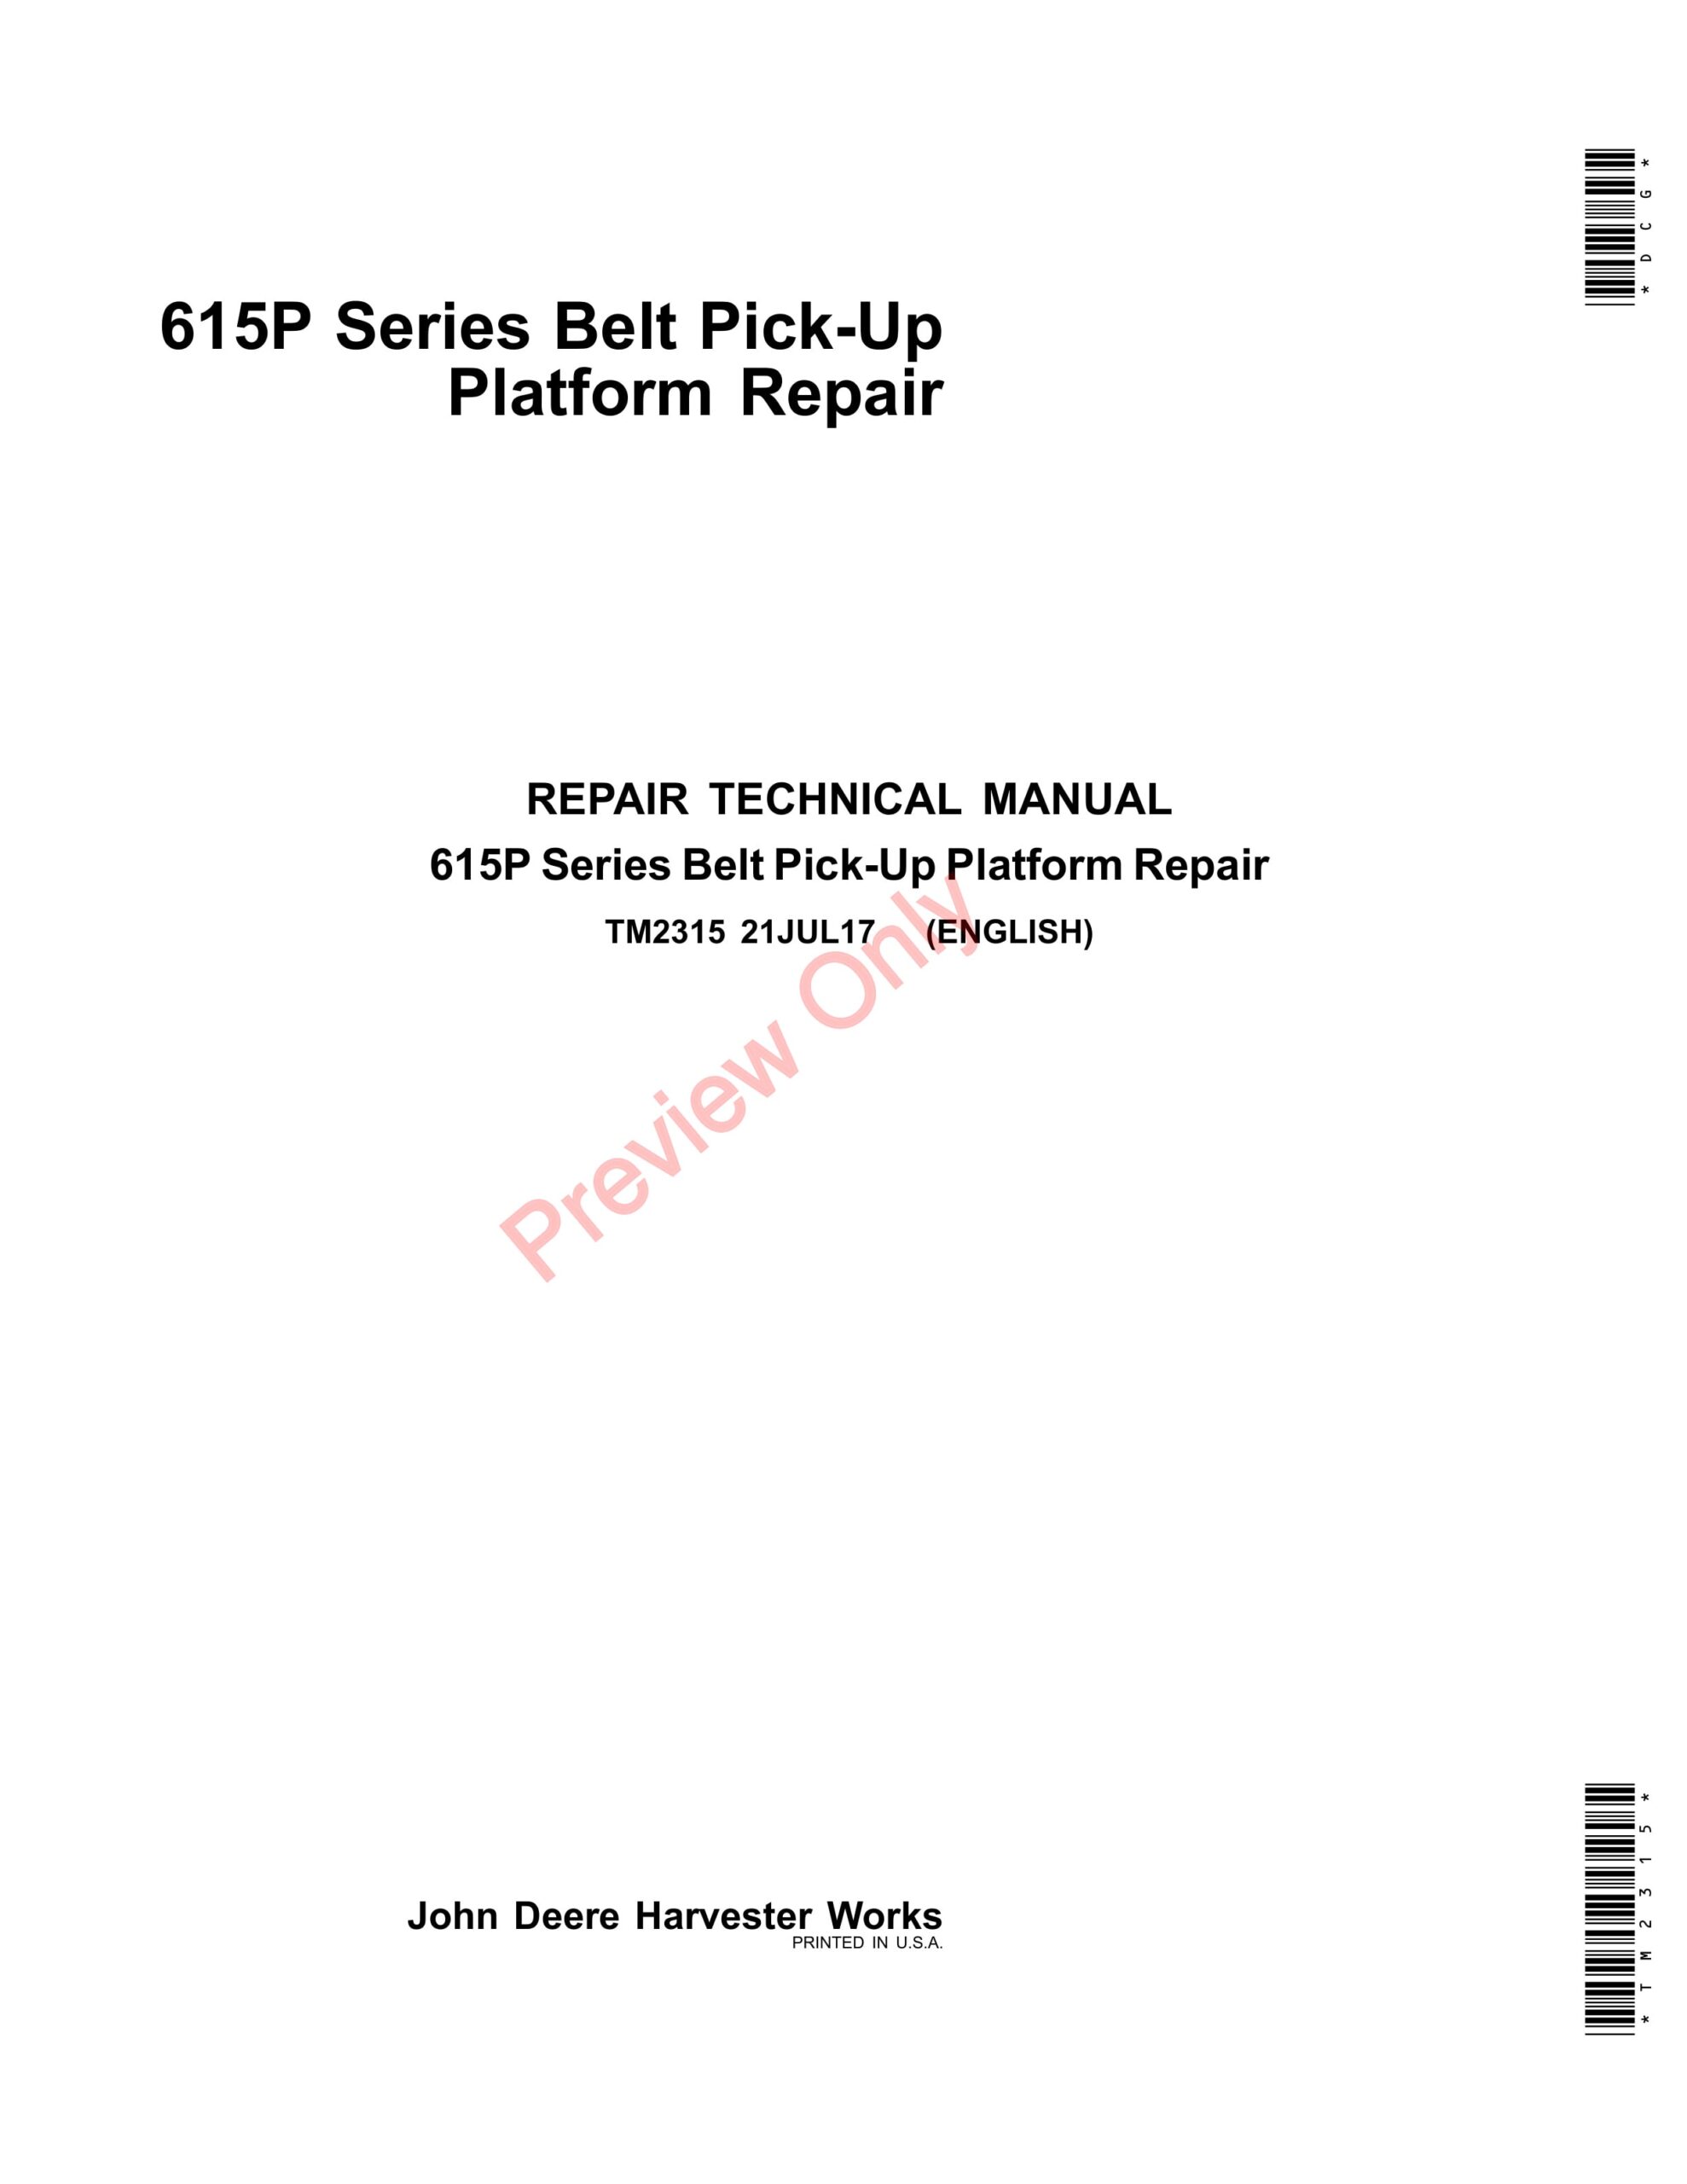 John Deere 615P Belt Pick-Up Platform Repair Technical Manual TM2315 21JUL17-1